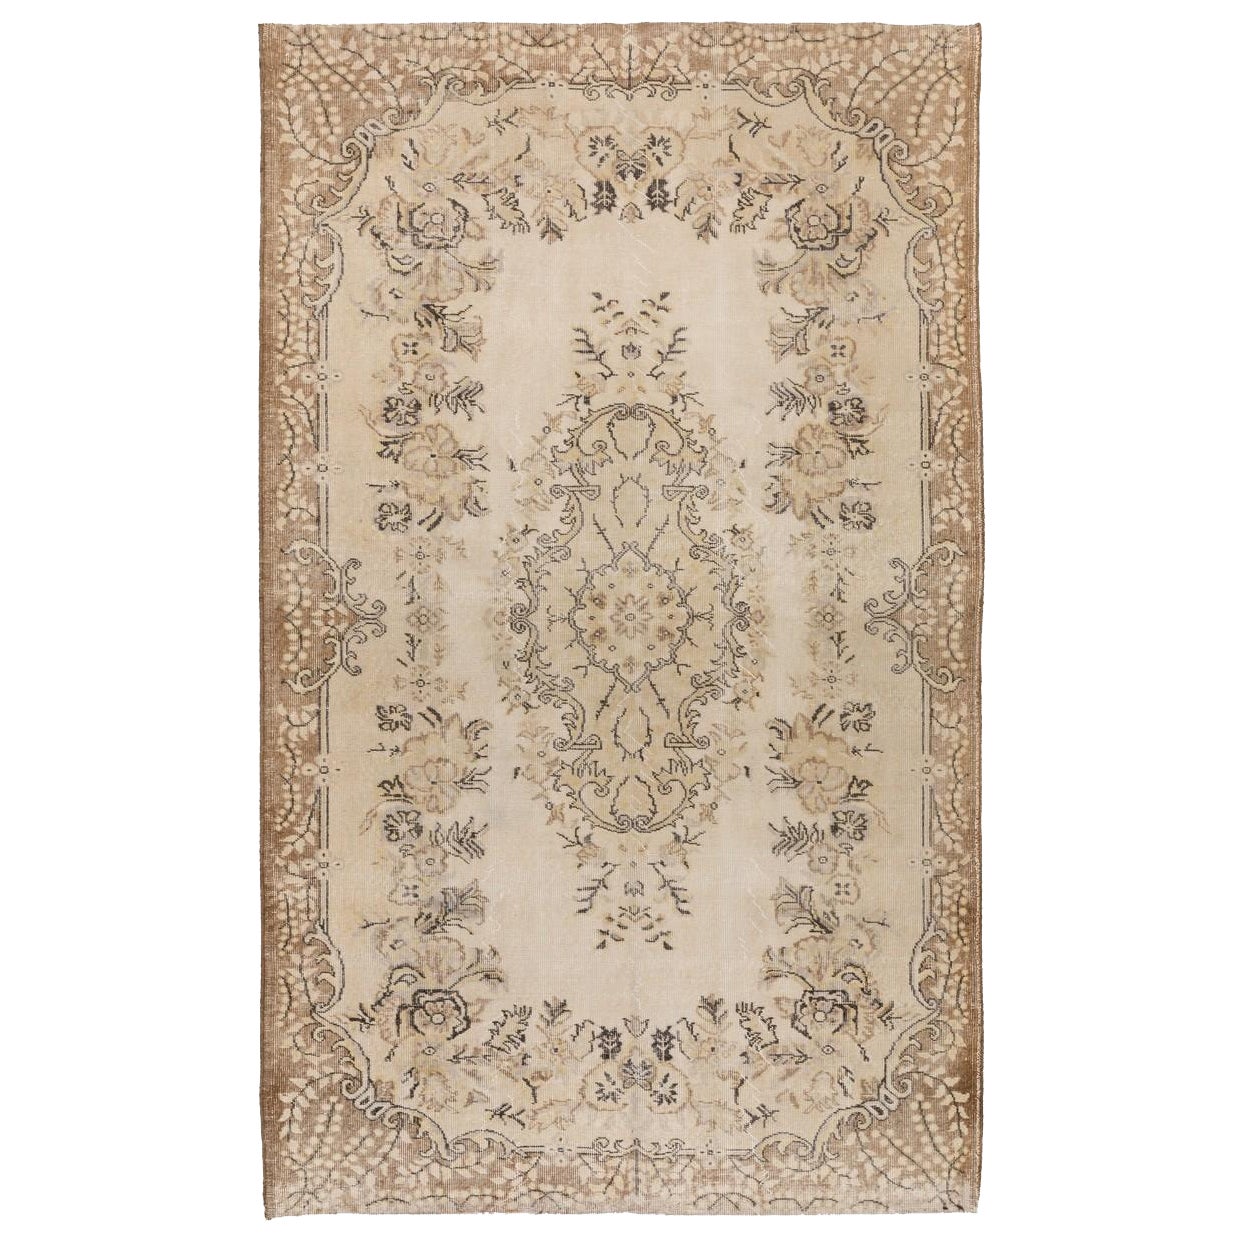 5.5x8.7 Ft Baroque Design Handmade Vintage Area Rug. Faded Turkish Oushak Carpet For Sale